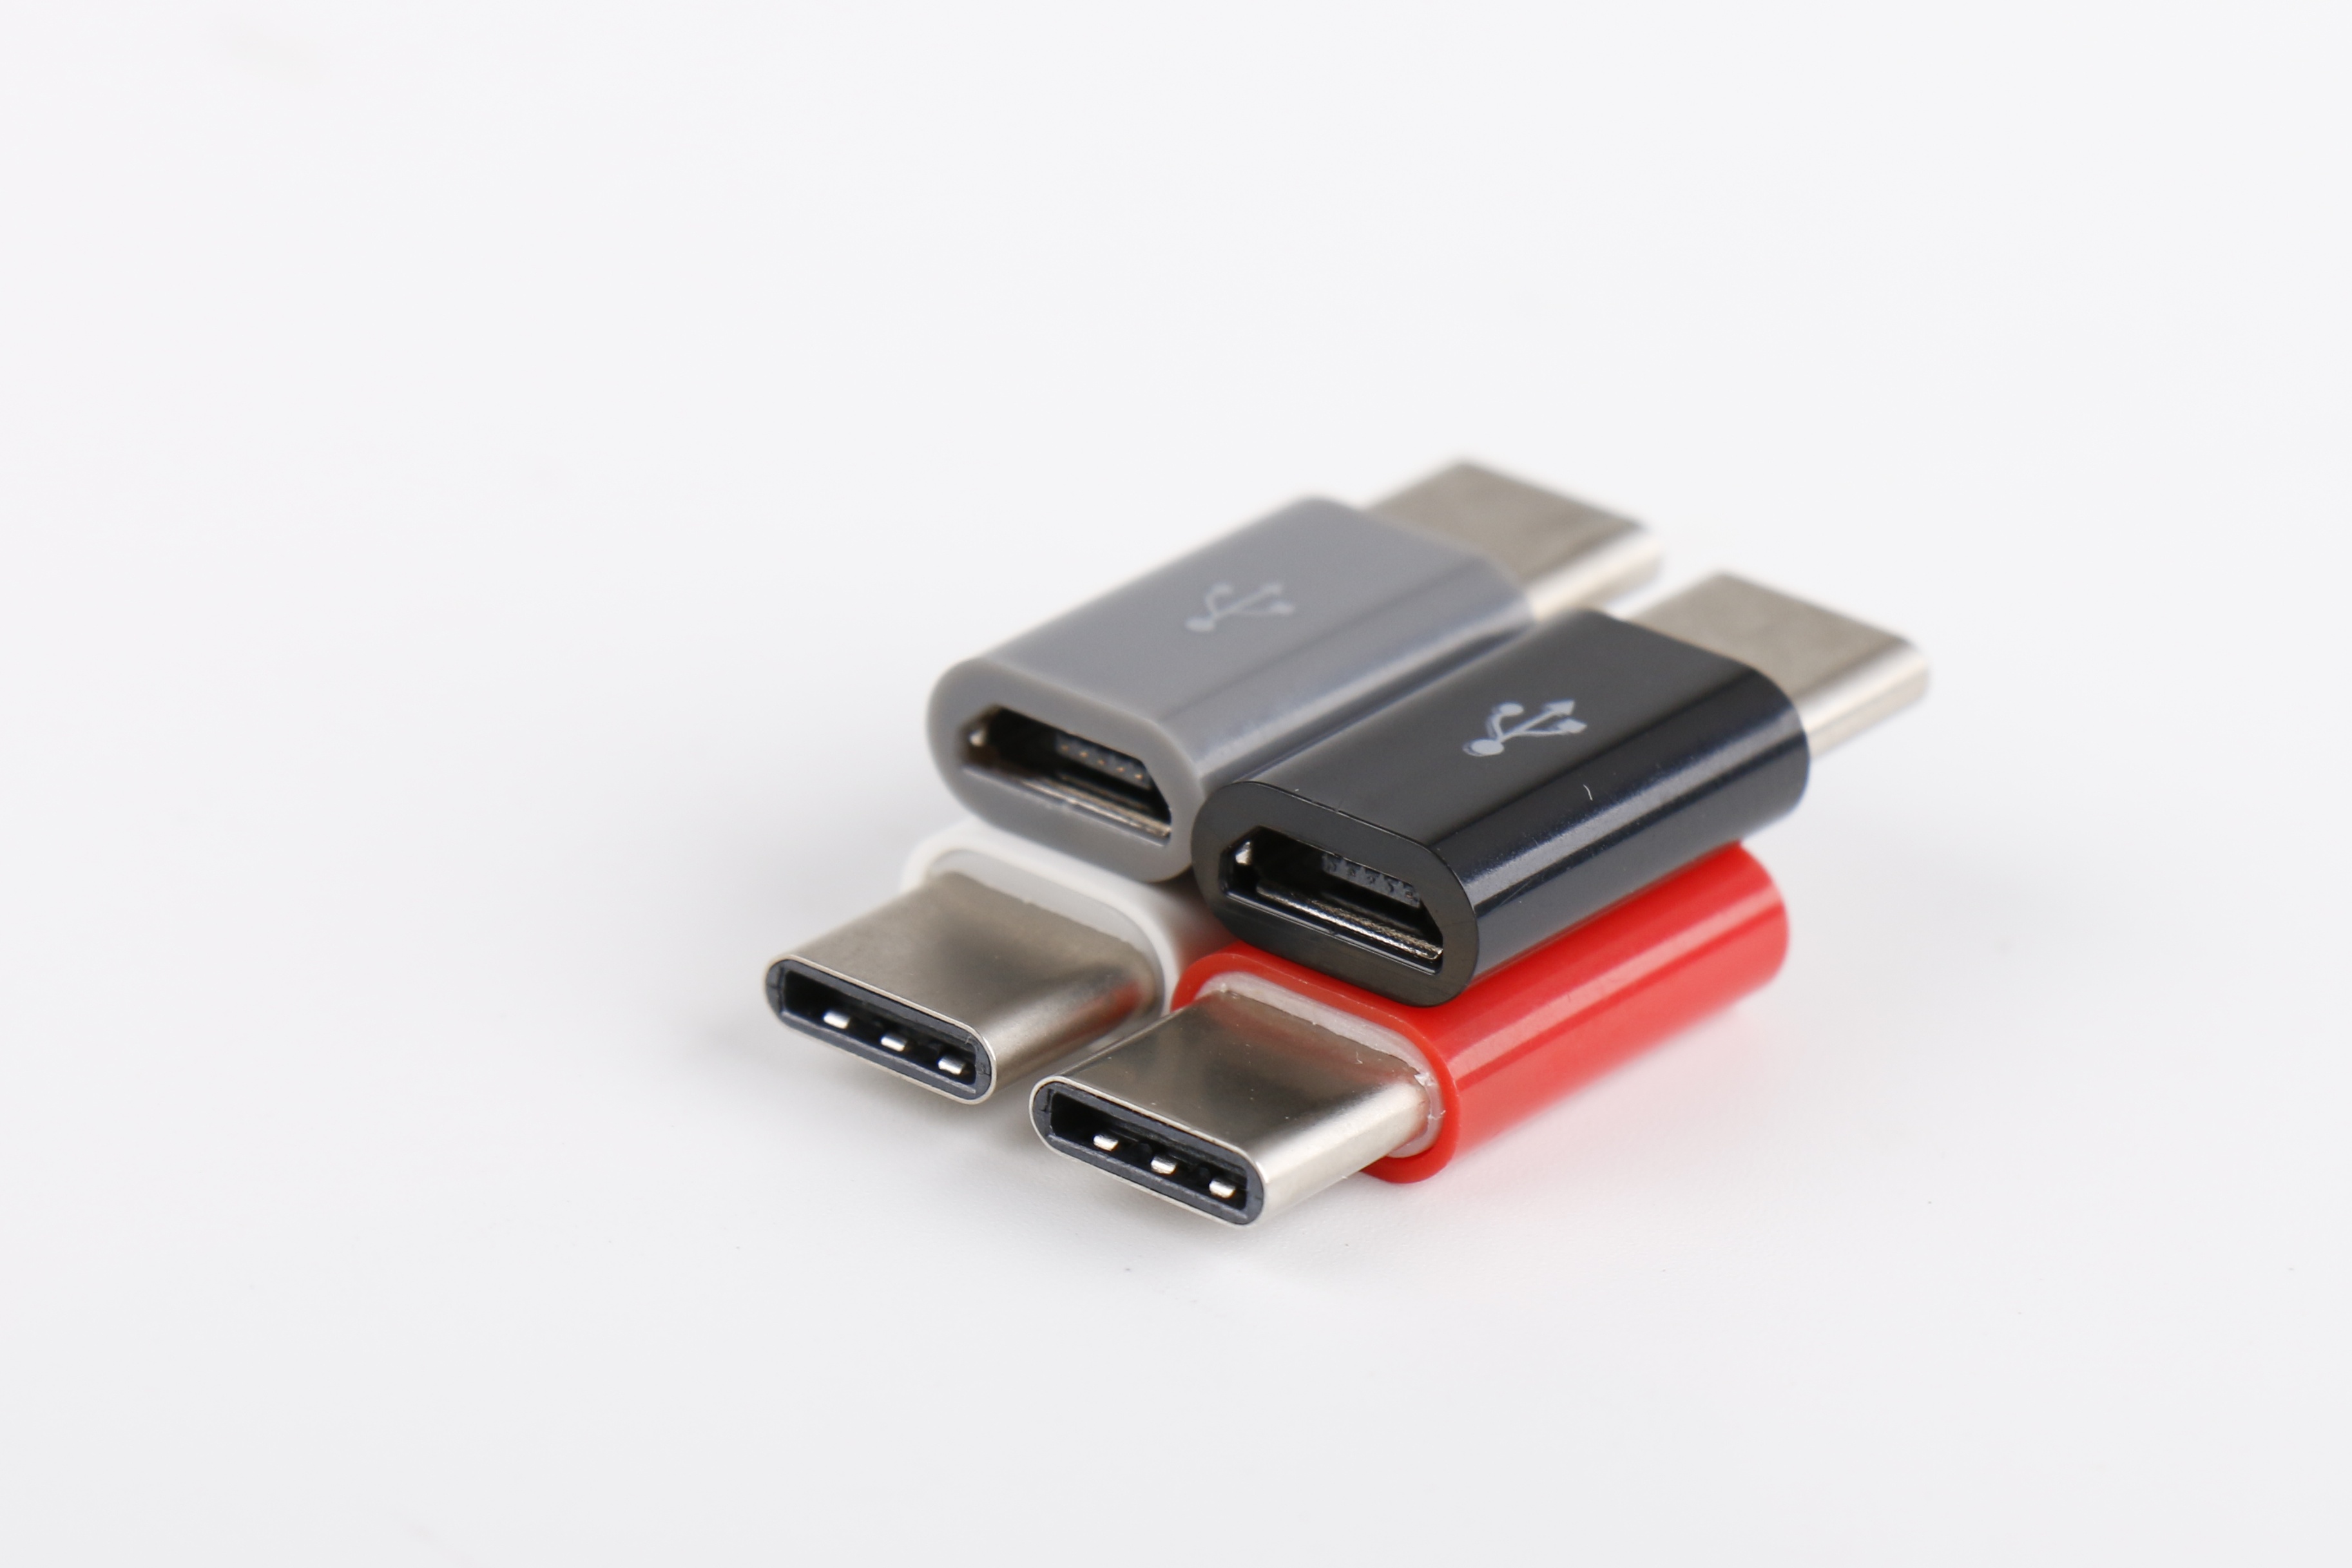 Ycom USB 3.1 Tipo C Macho a Micro USB Adaptador Convertidor Hembra